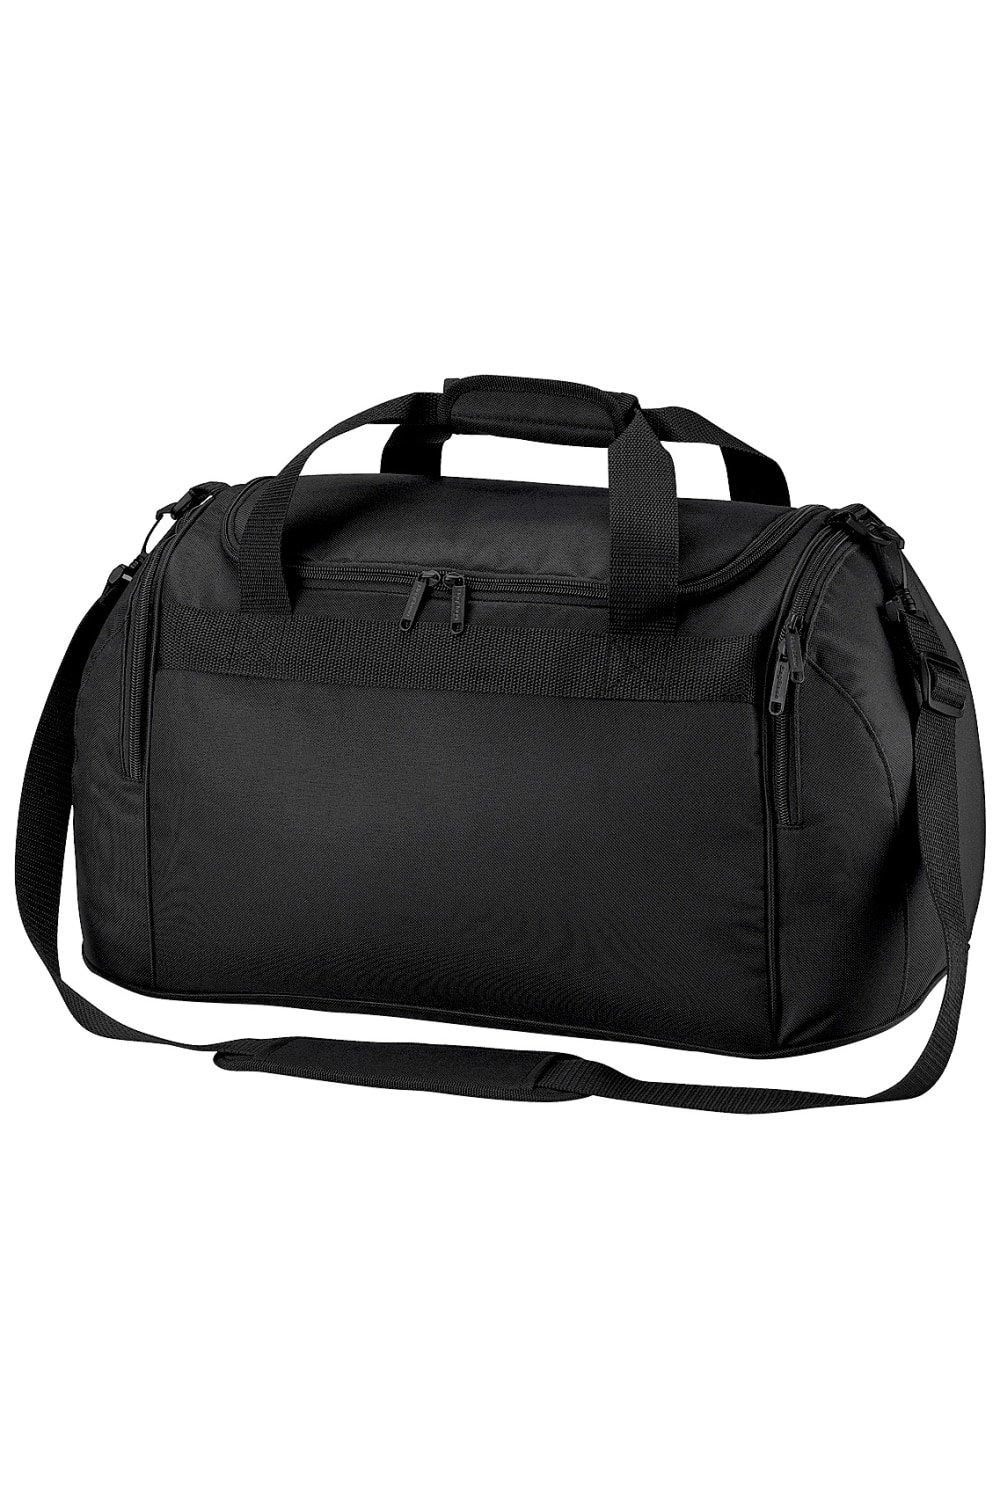 Дорожная сумка для фристайла/спортивная сумка (26 литров) (2 шт. в упаковке) Bagbase, черный